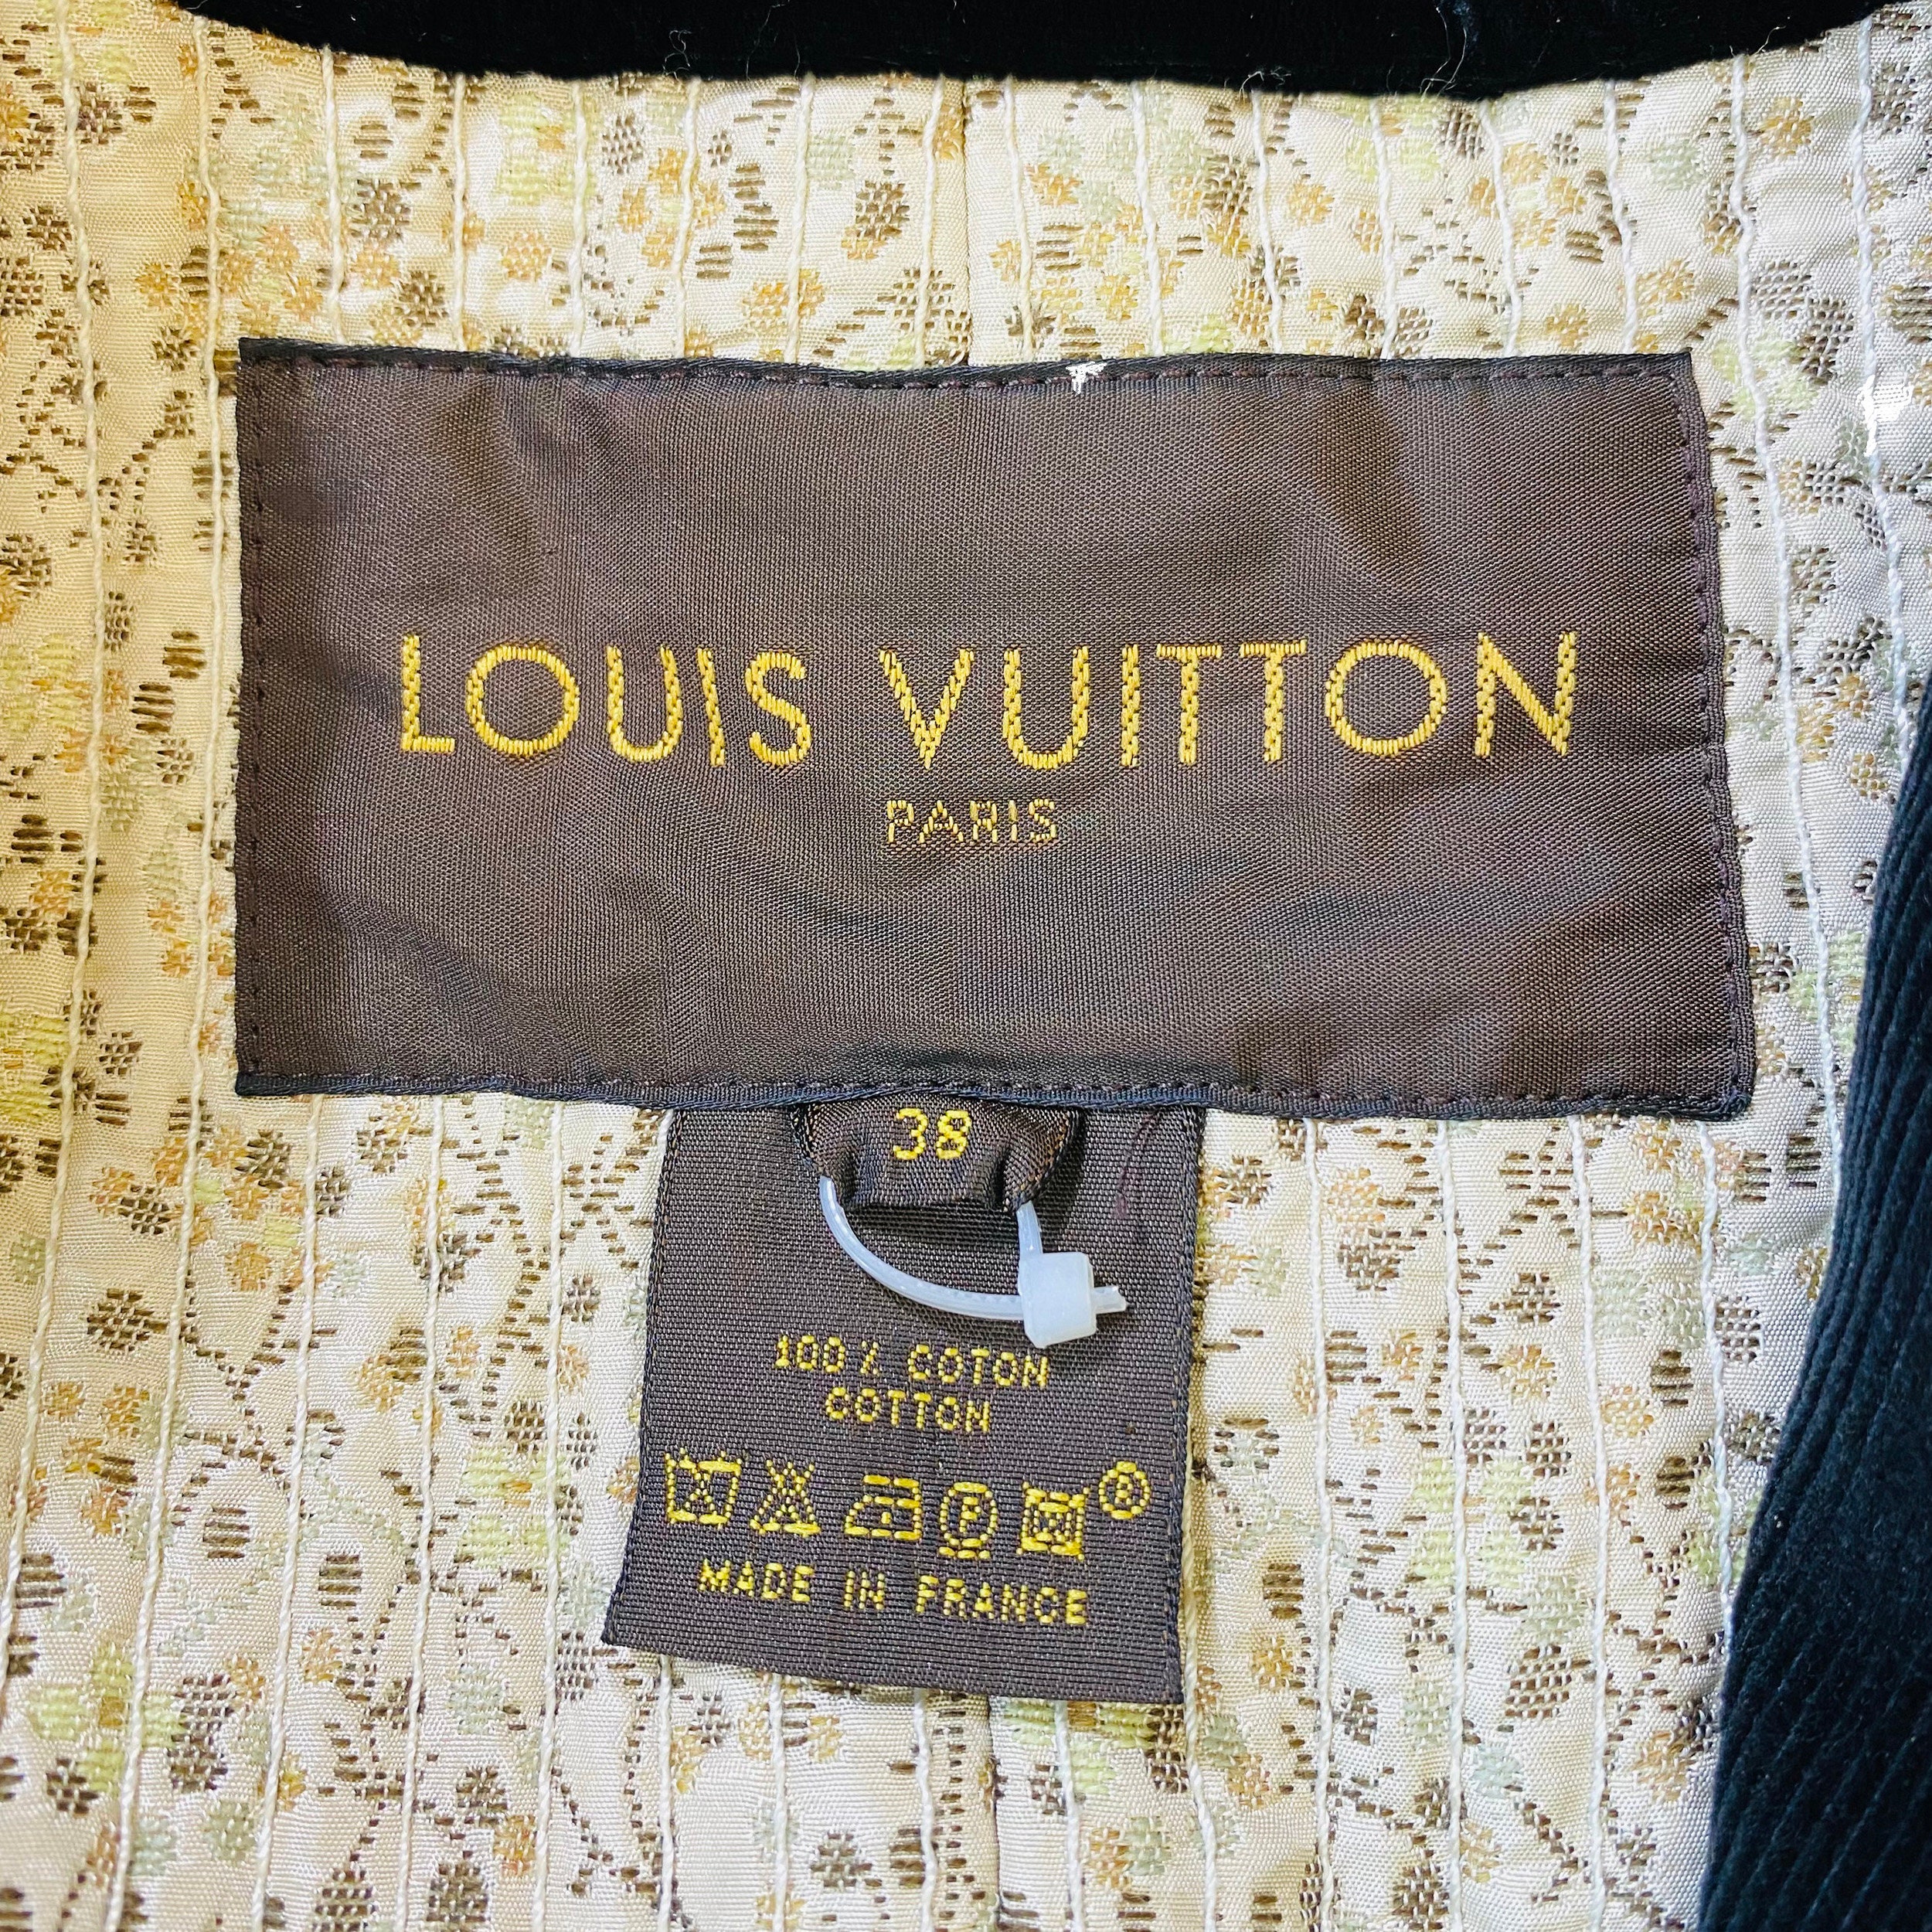 Louis Vuitton Corduroy Military Jacket - Black Outerwear, Clothing